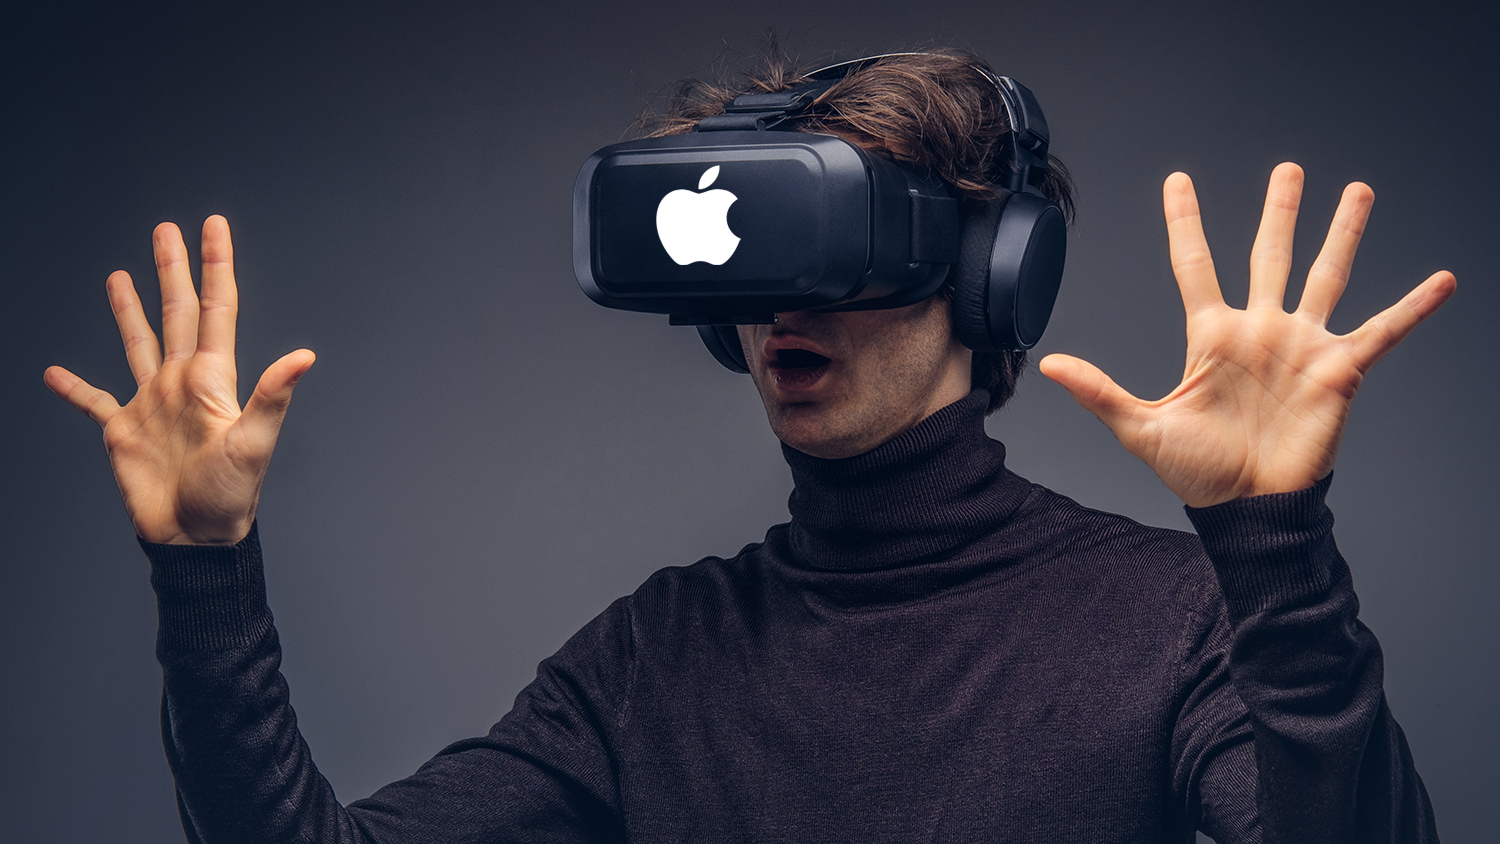 VR-гарнитура Apple может выйти недоработанной из-за Тима Кука